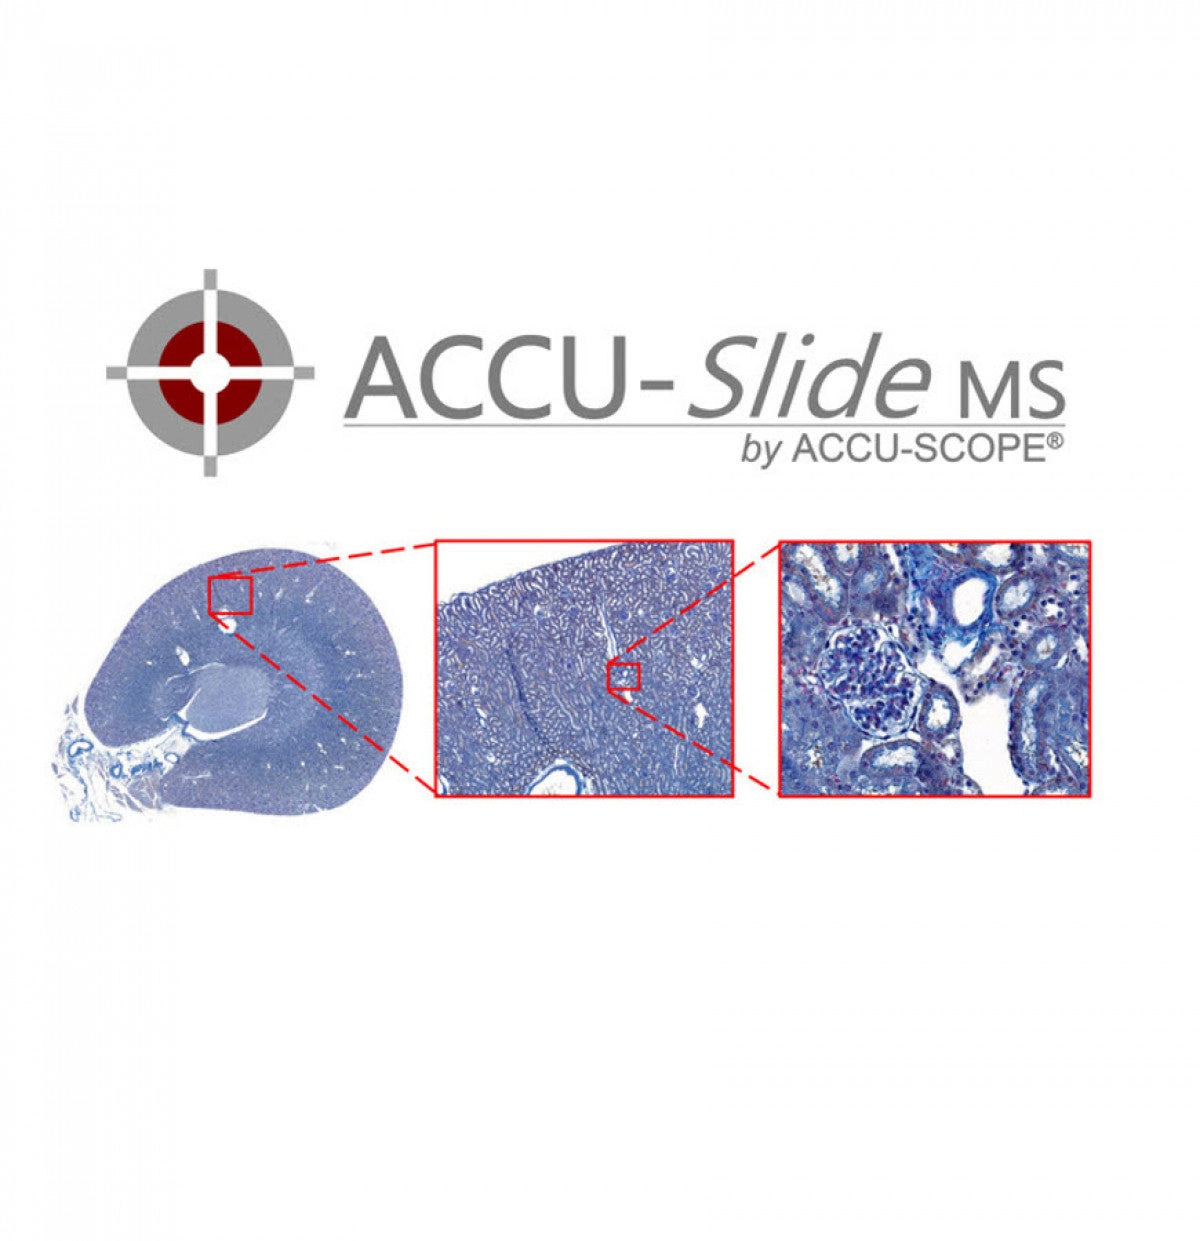 Accu-Scope ACCU-SlideMS Manual Slide Scanning System